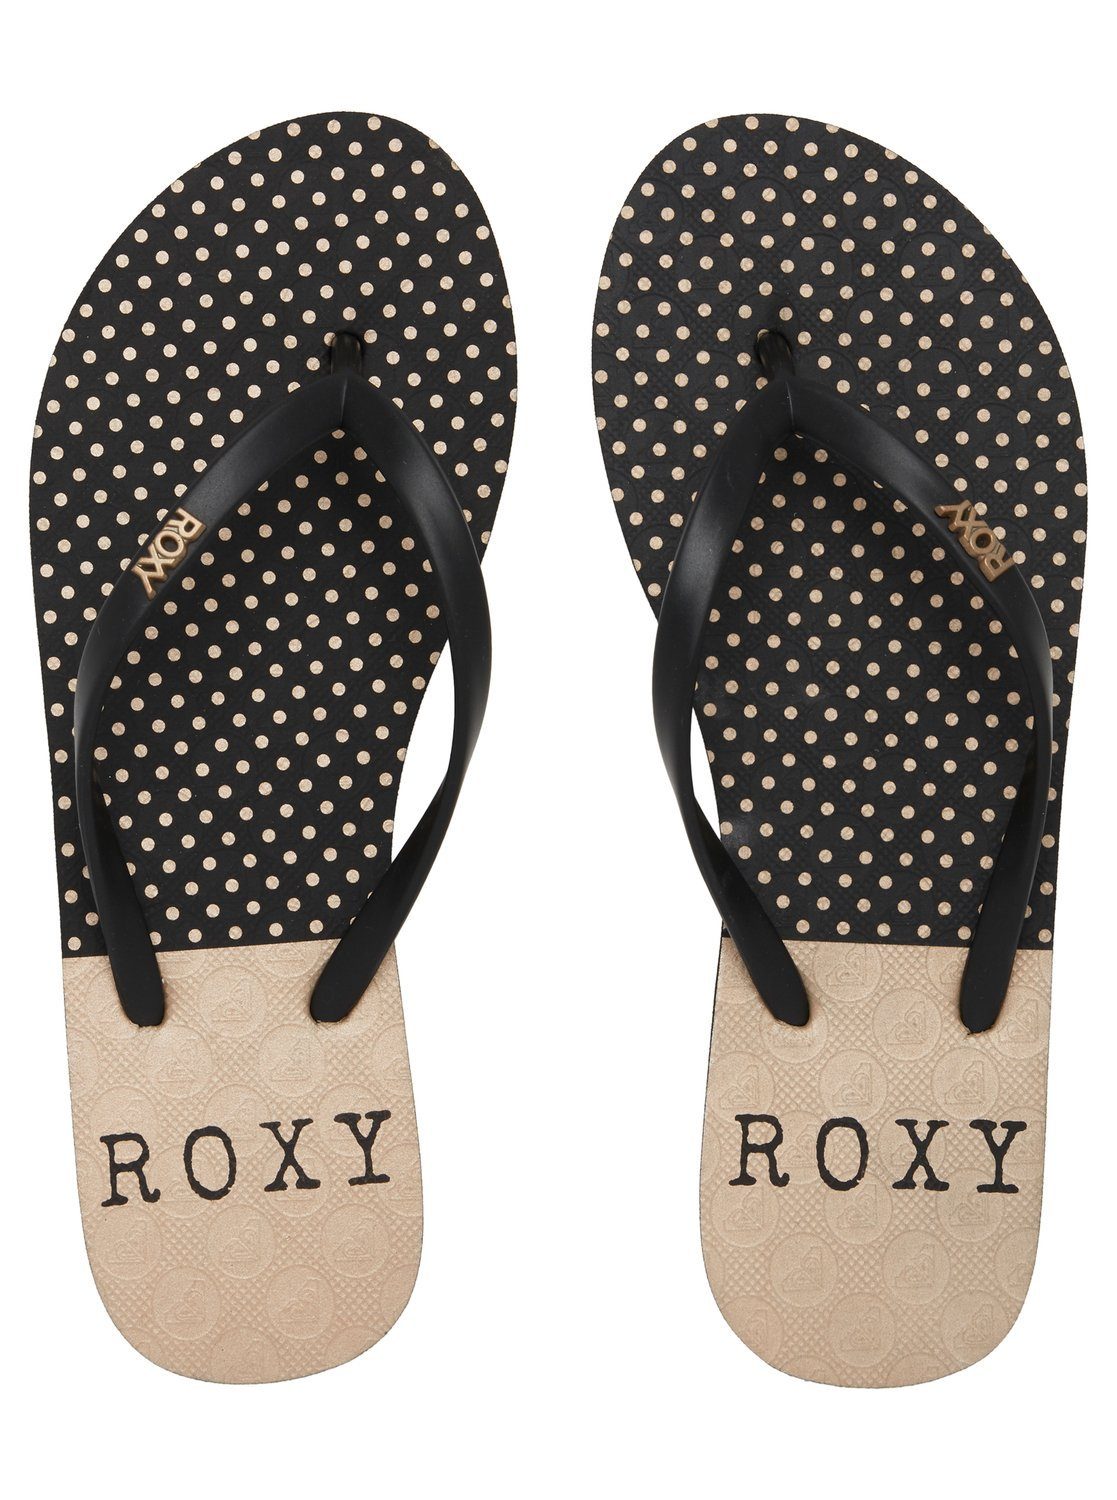 Roxy Viva Stamp Black/Black/Black Print Sandale